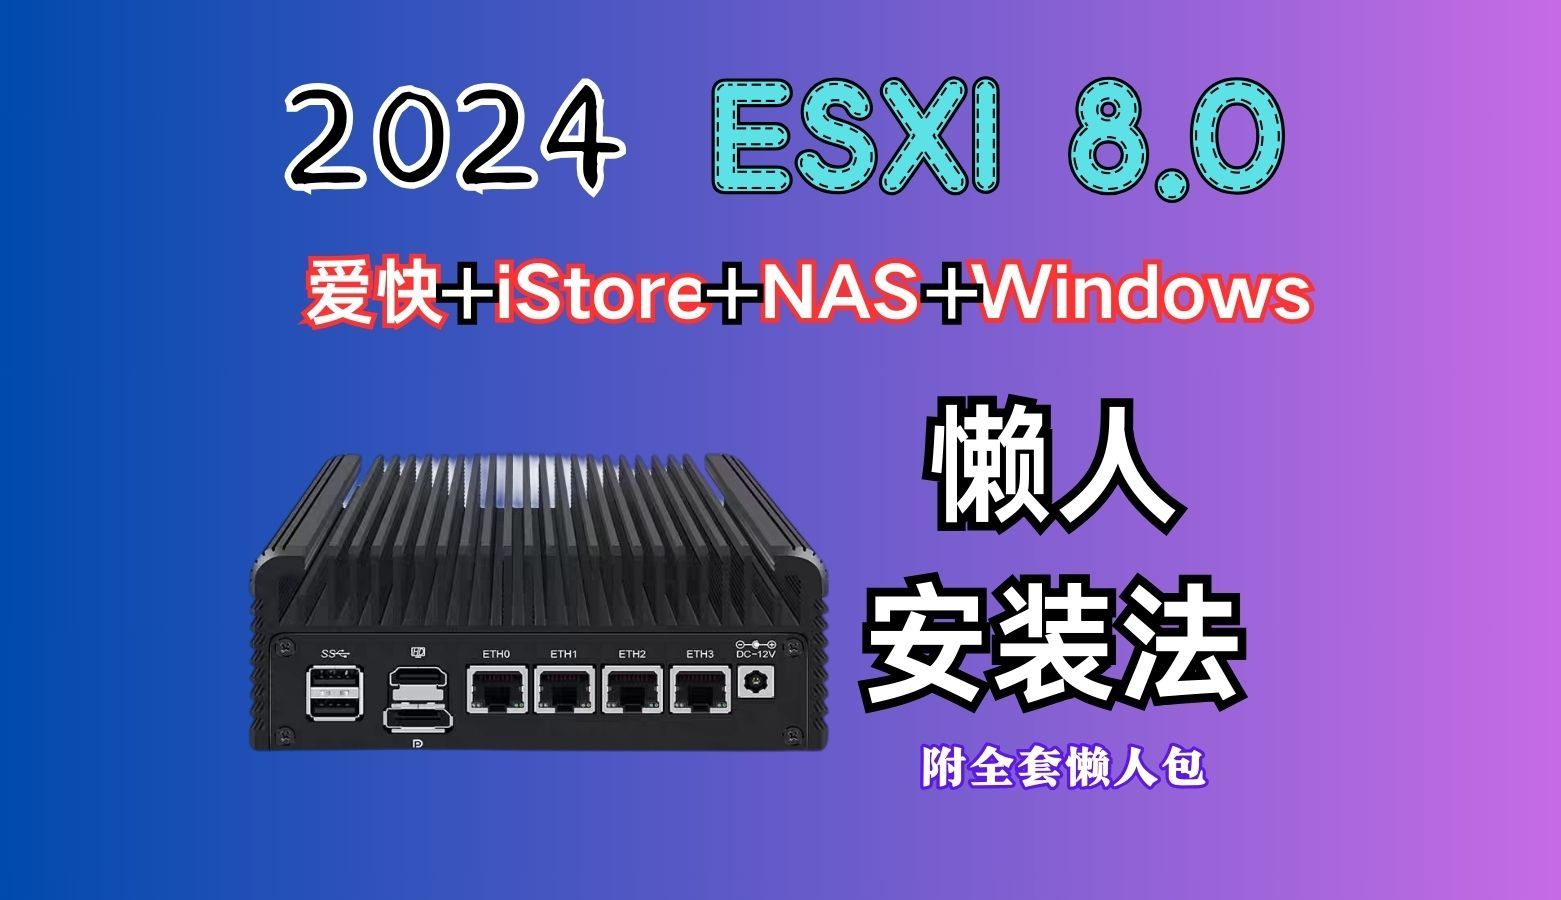 2024年ESXI8.0安装（爱快+iStore+NAS+windows）懒人安装教程（硬盘直通等一站式解决）（附全套懒人包）